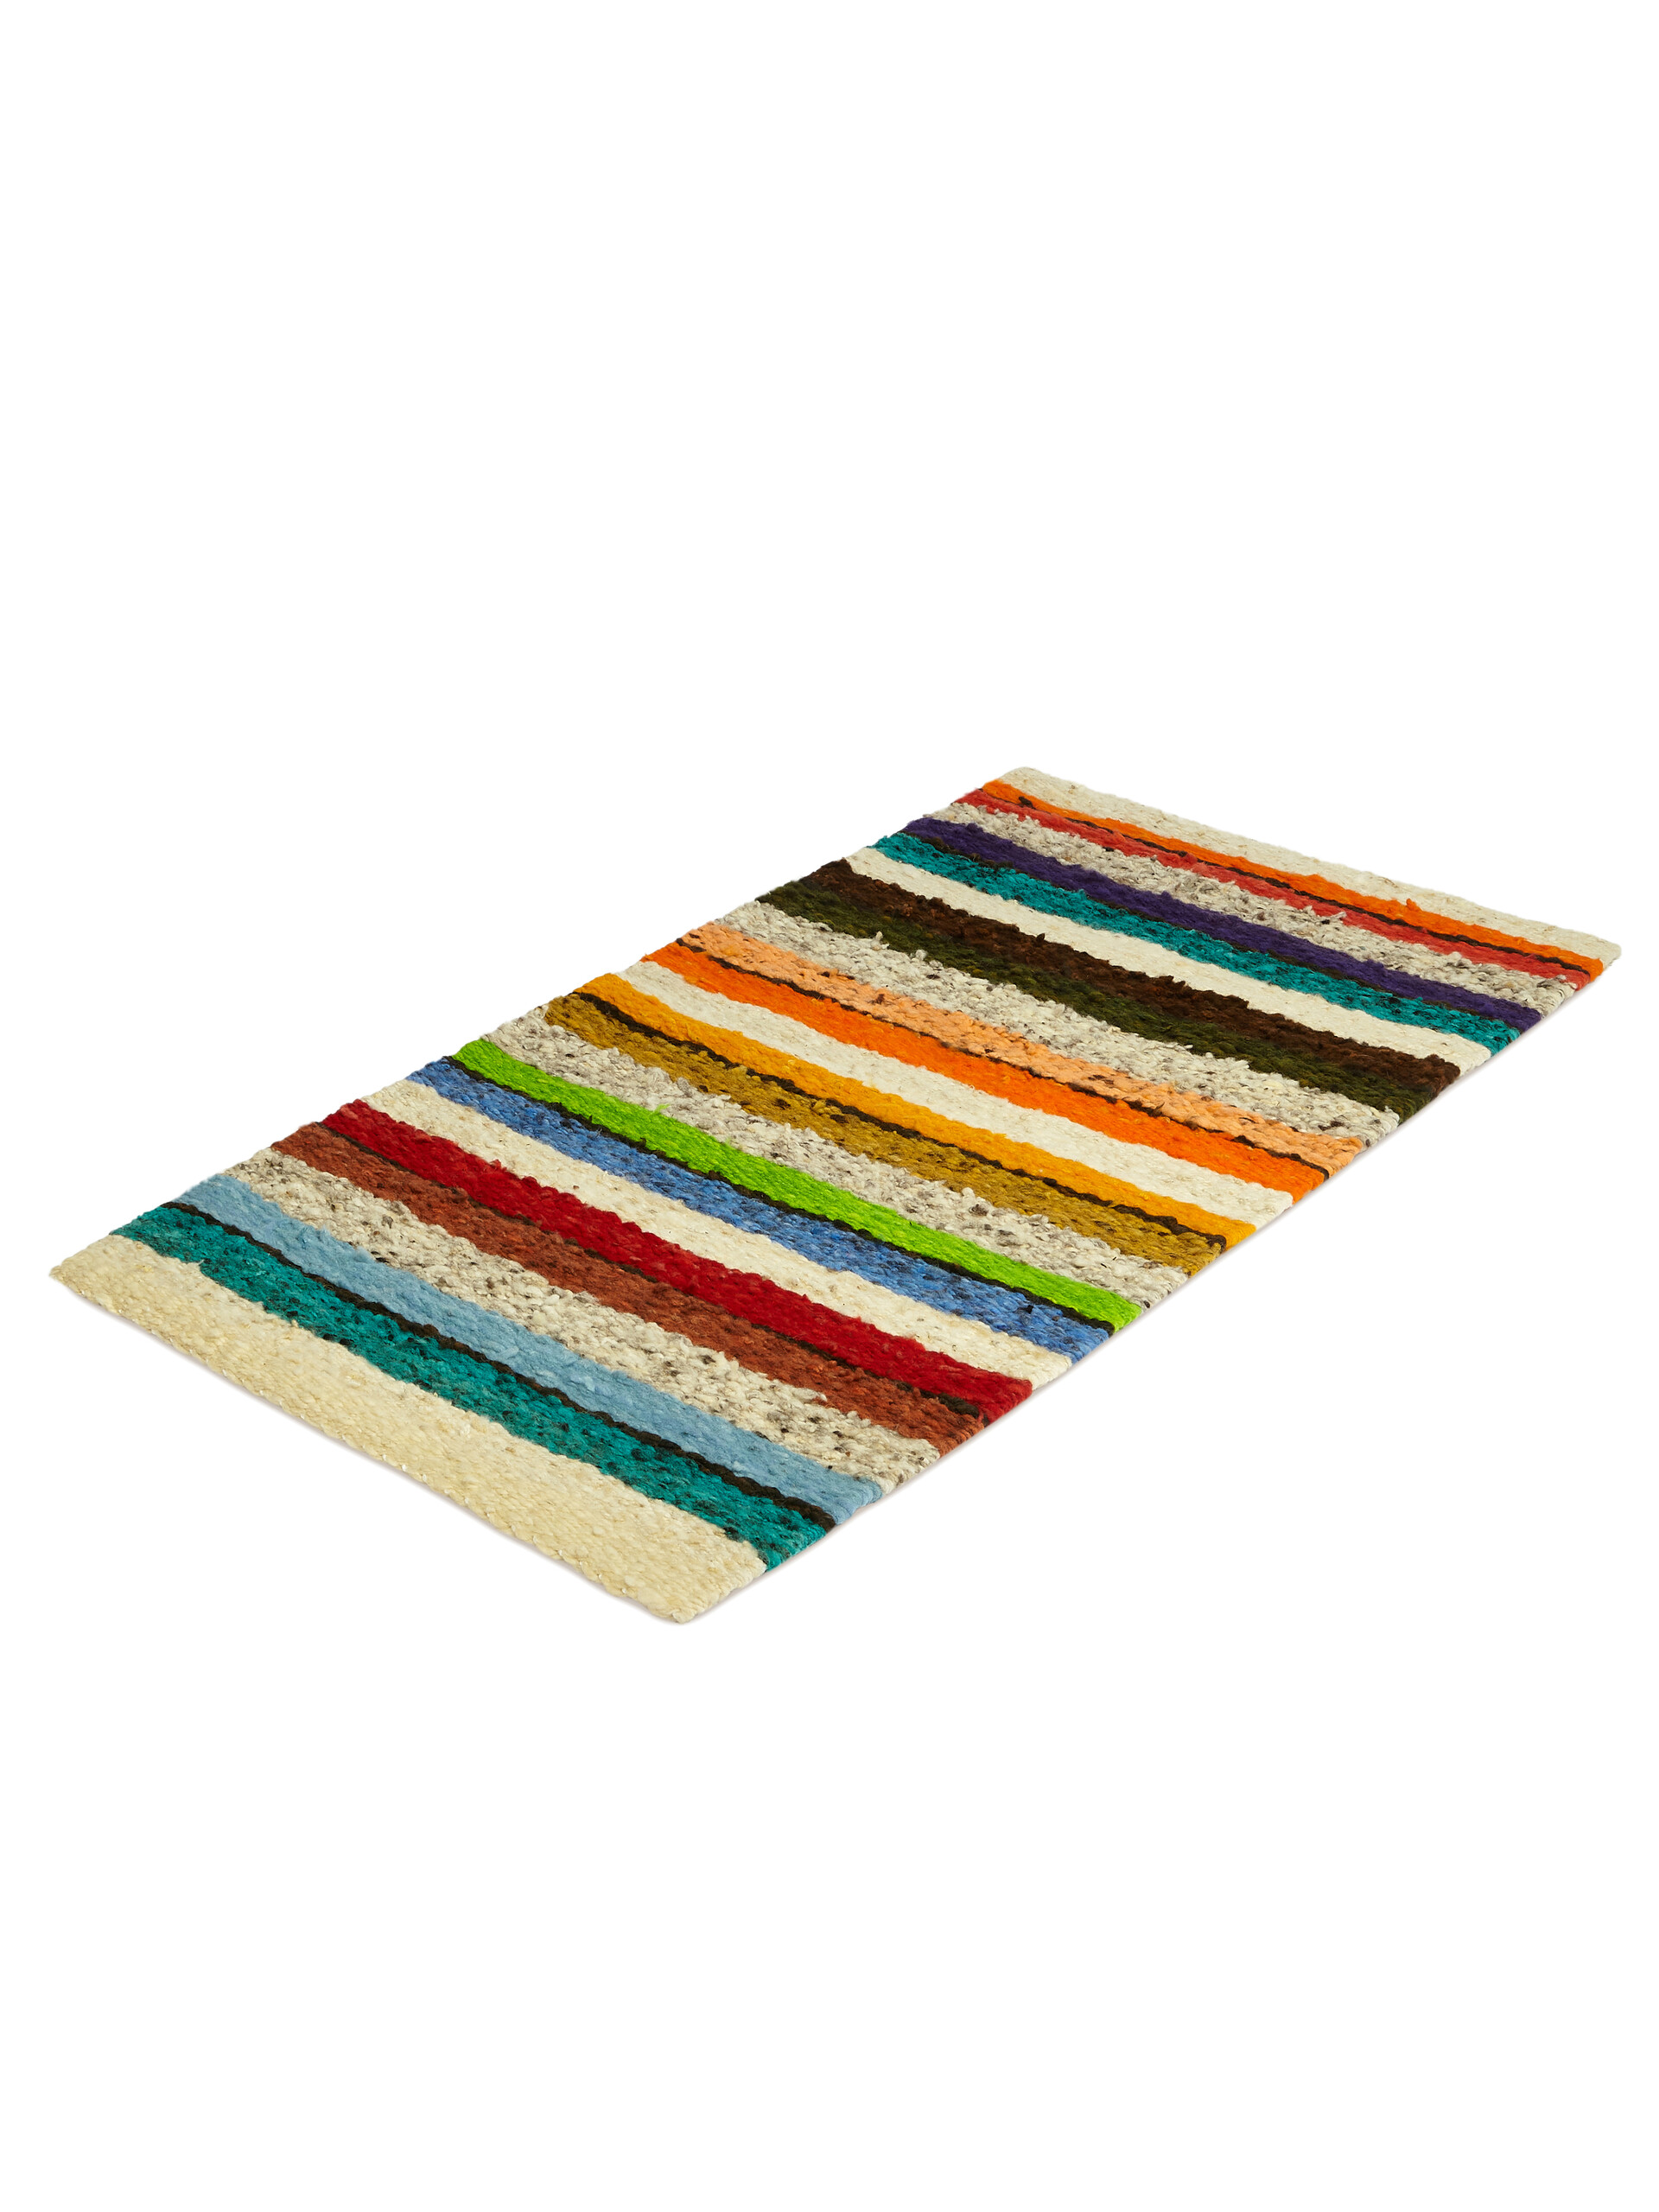 Large MARNI MARKET wool carpet - Furniture - Image 2